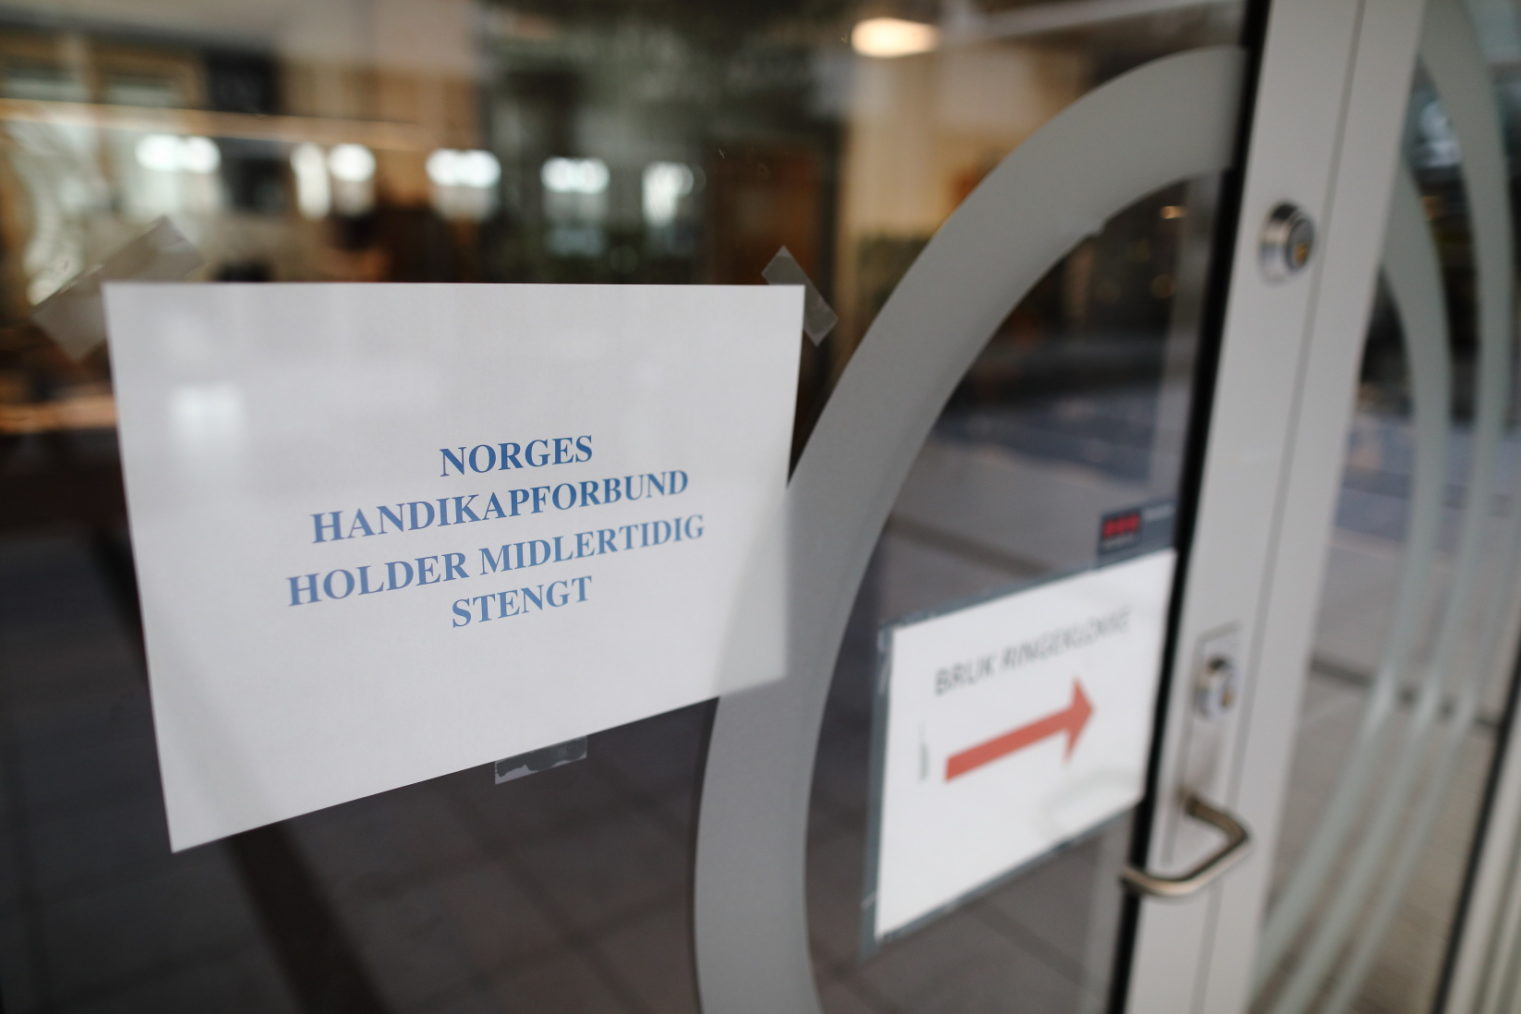 Bilde av døra med skiltet "Norges Handikapforbund holder midlertidig stengt".